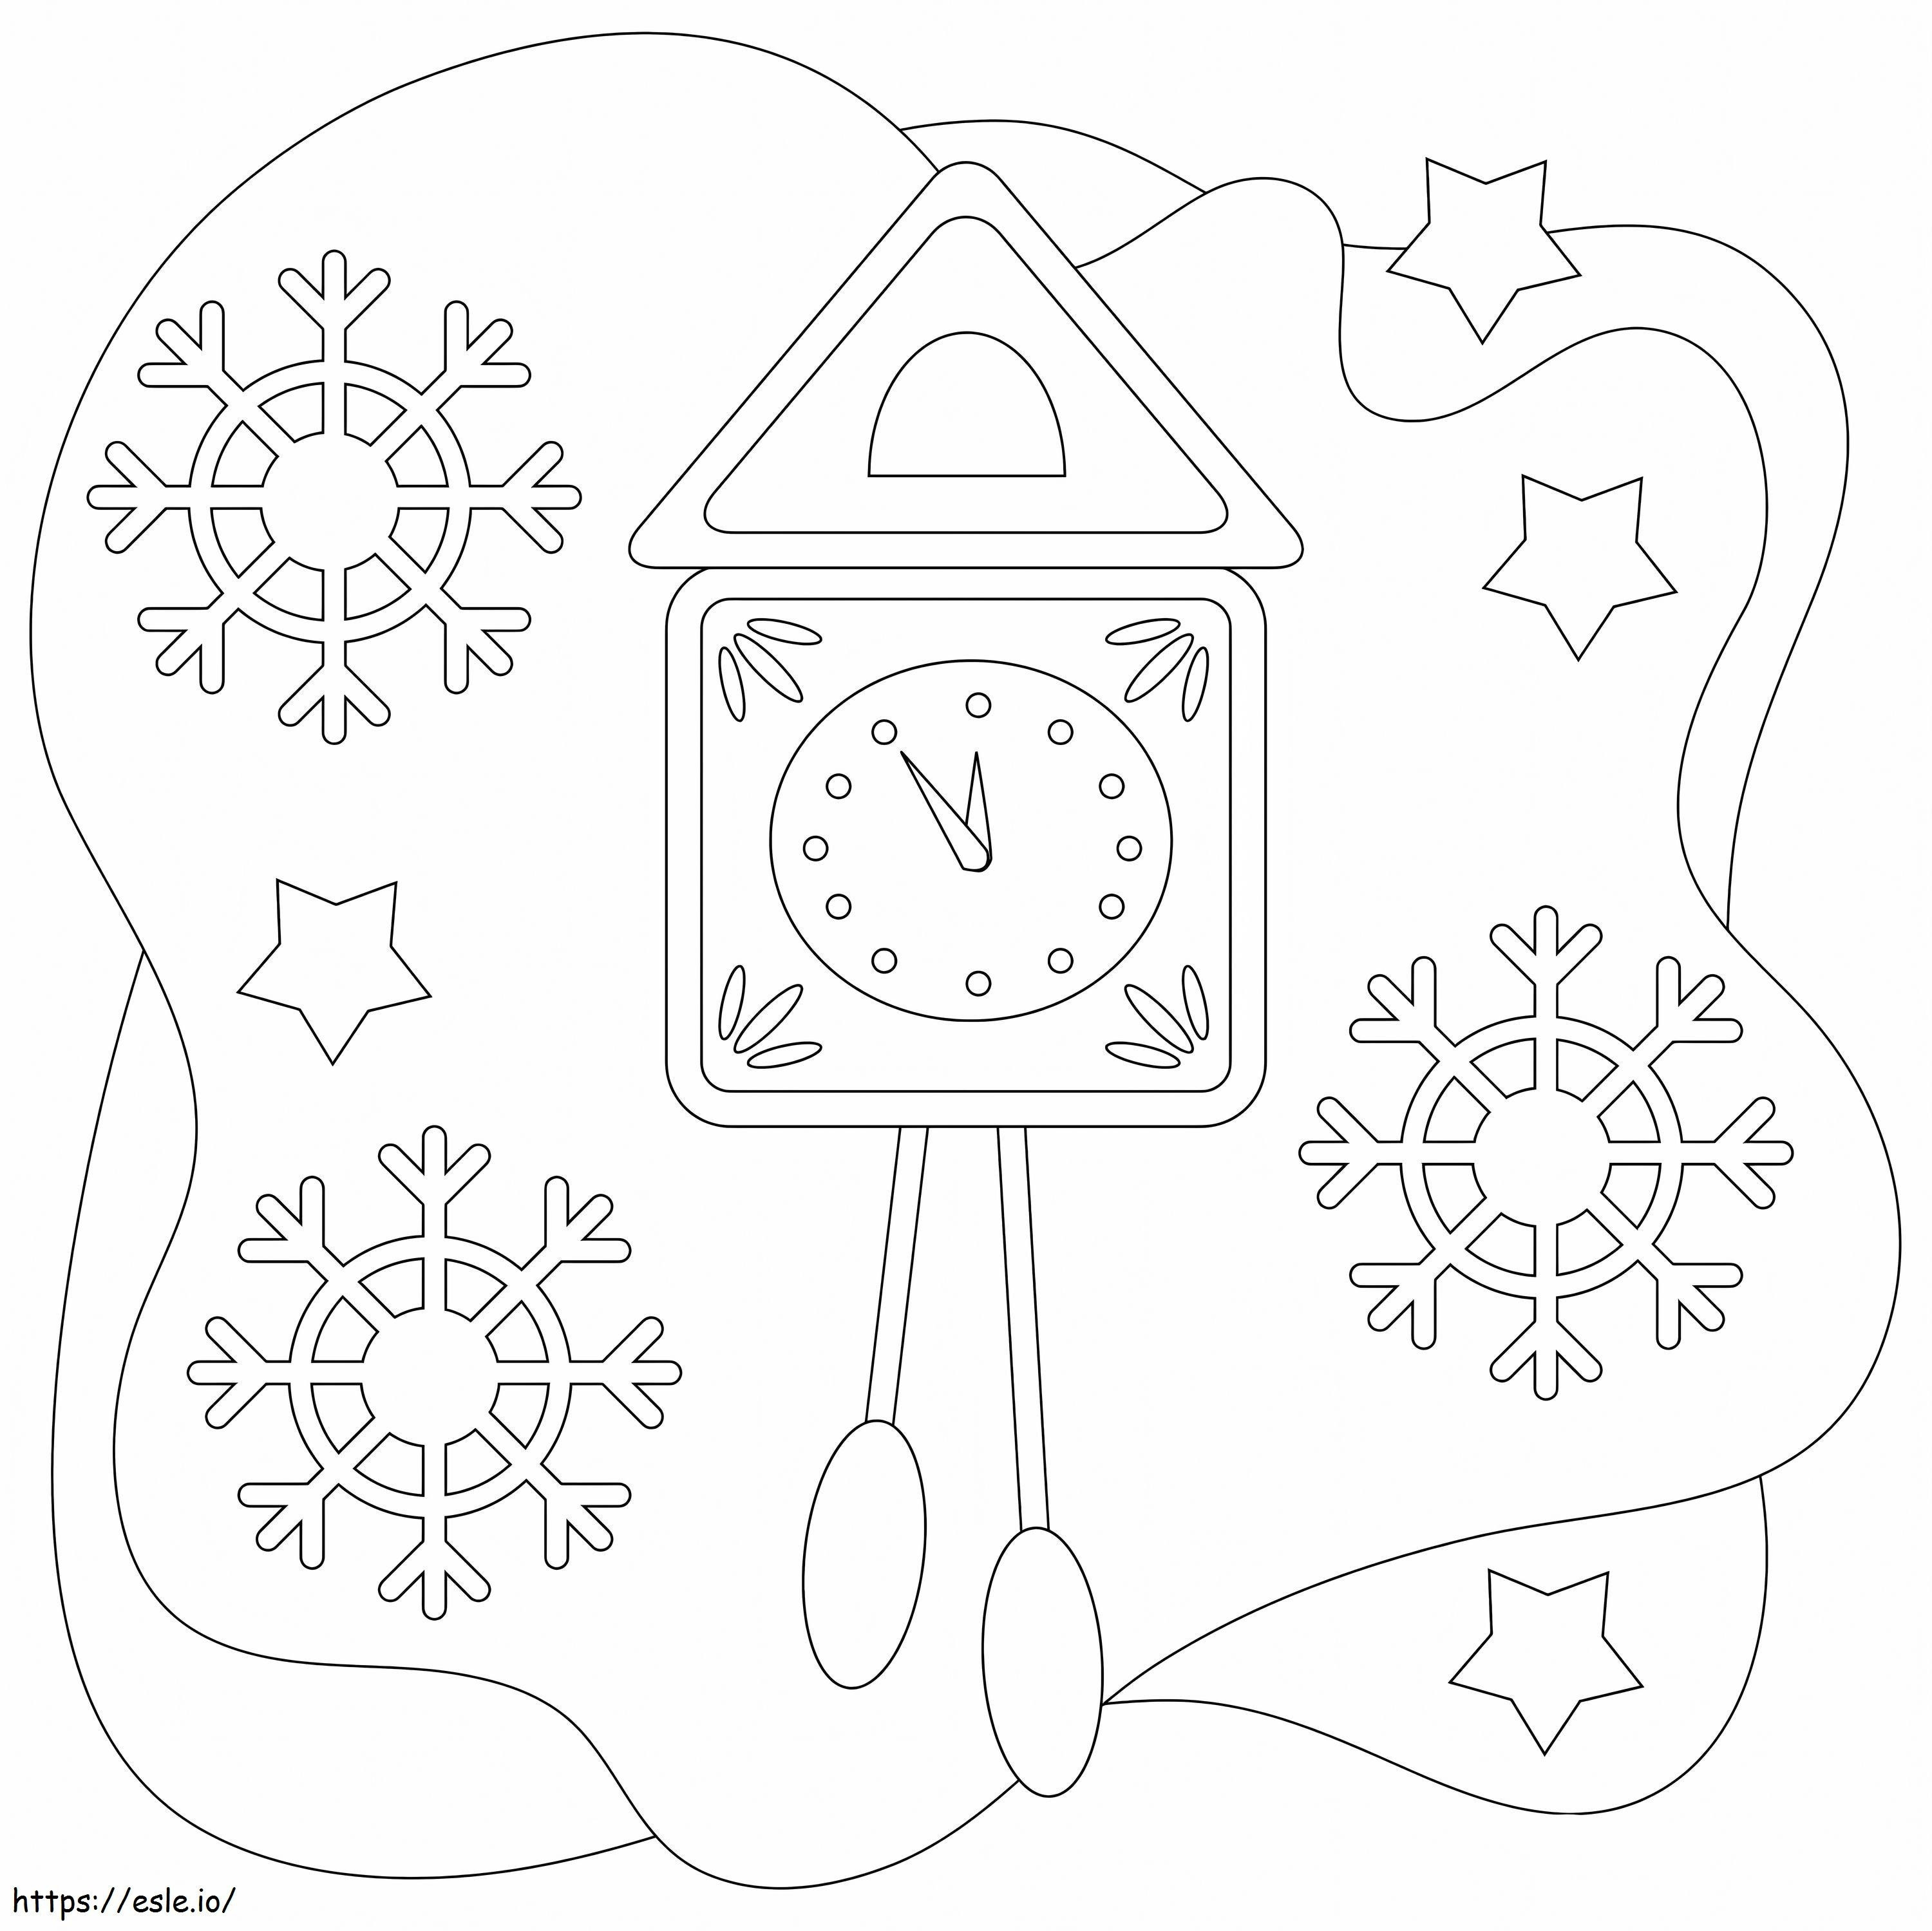 Uhr im Schnee ausmalbilder